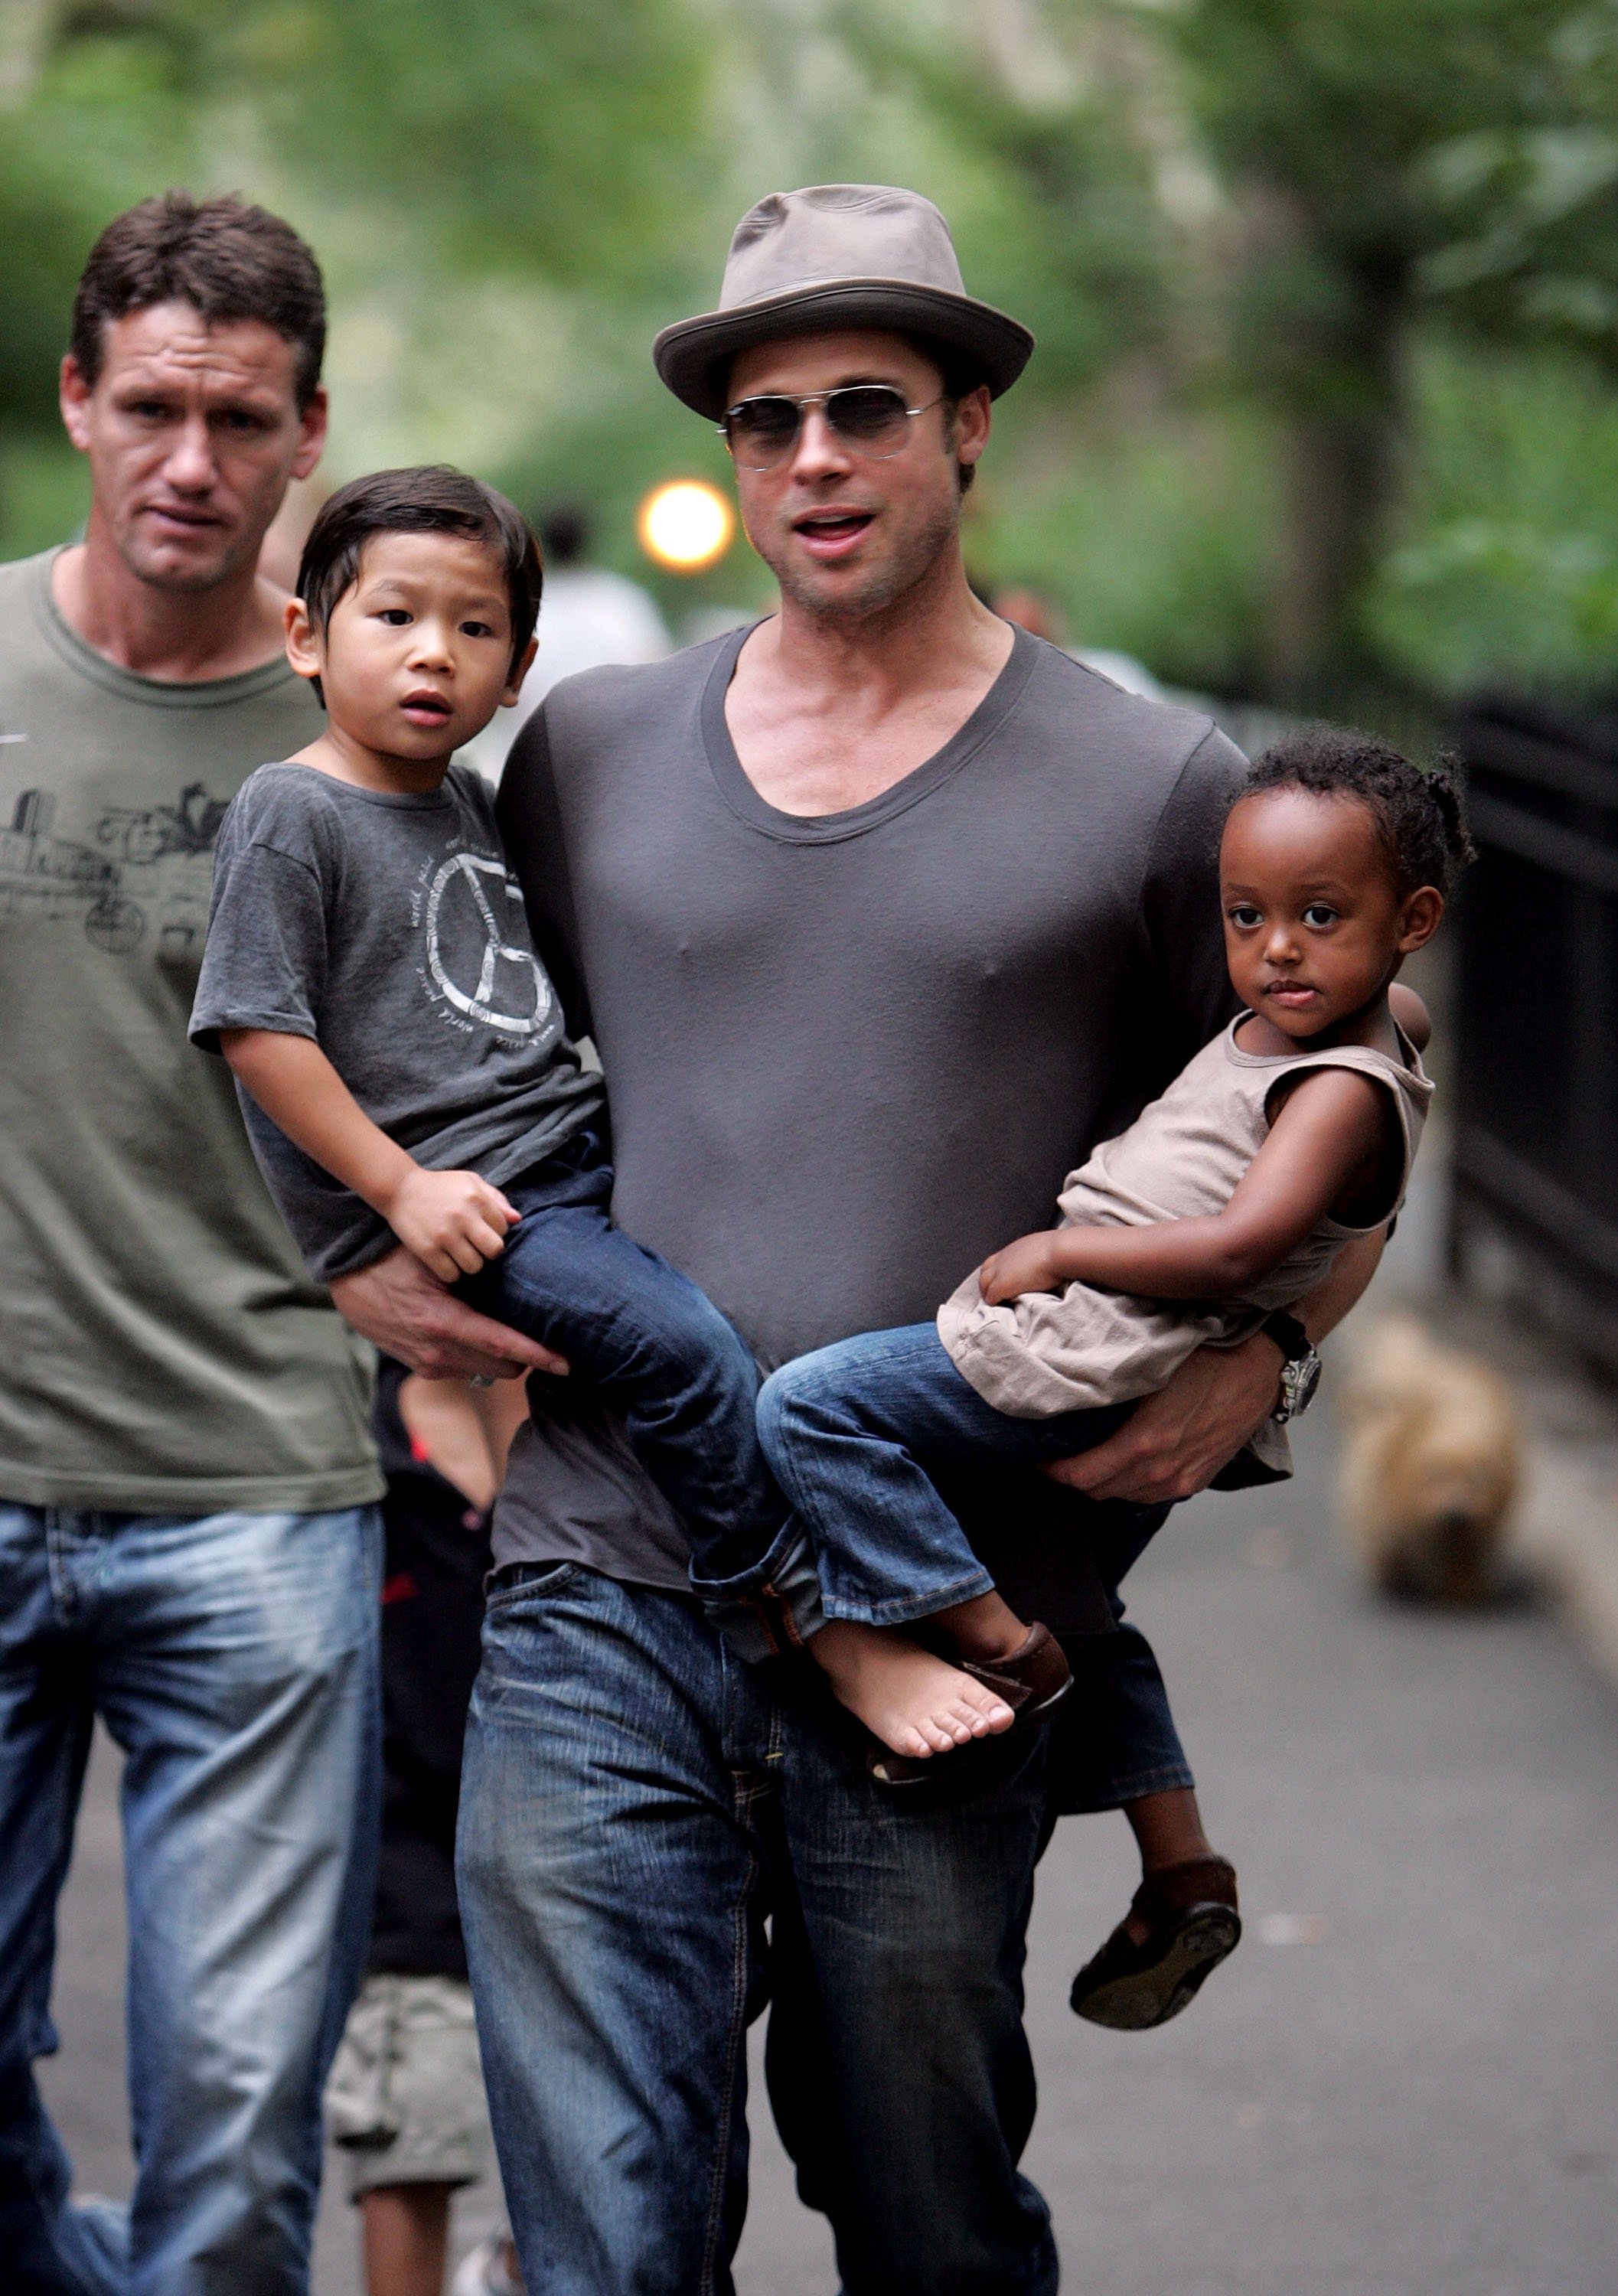 Brad Pitt visitant une aire de jeux avec ses enfants Zahara Jolie-Pitt, Pax Jolie-Pitt et Maddox Jolie-Pitt à New York City le 26 août 2007. | Source : Getty Images